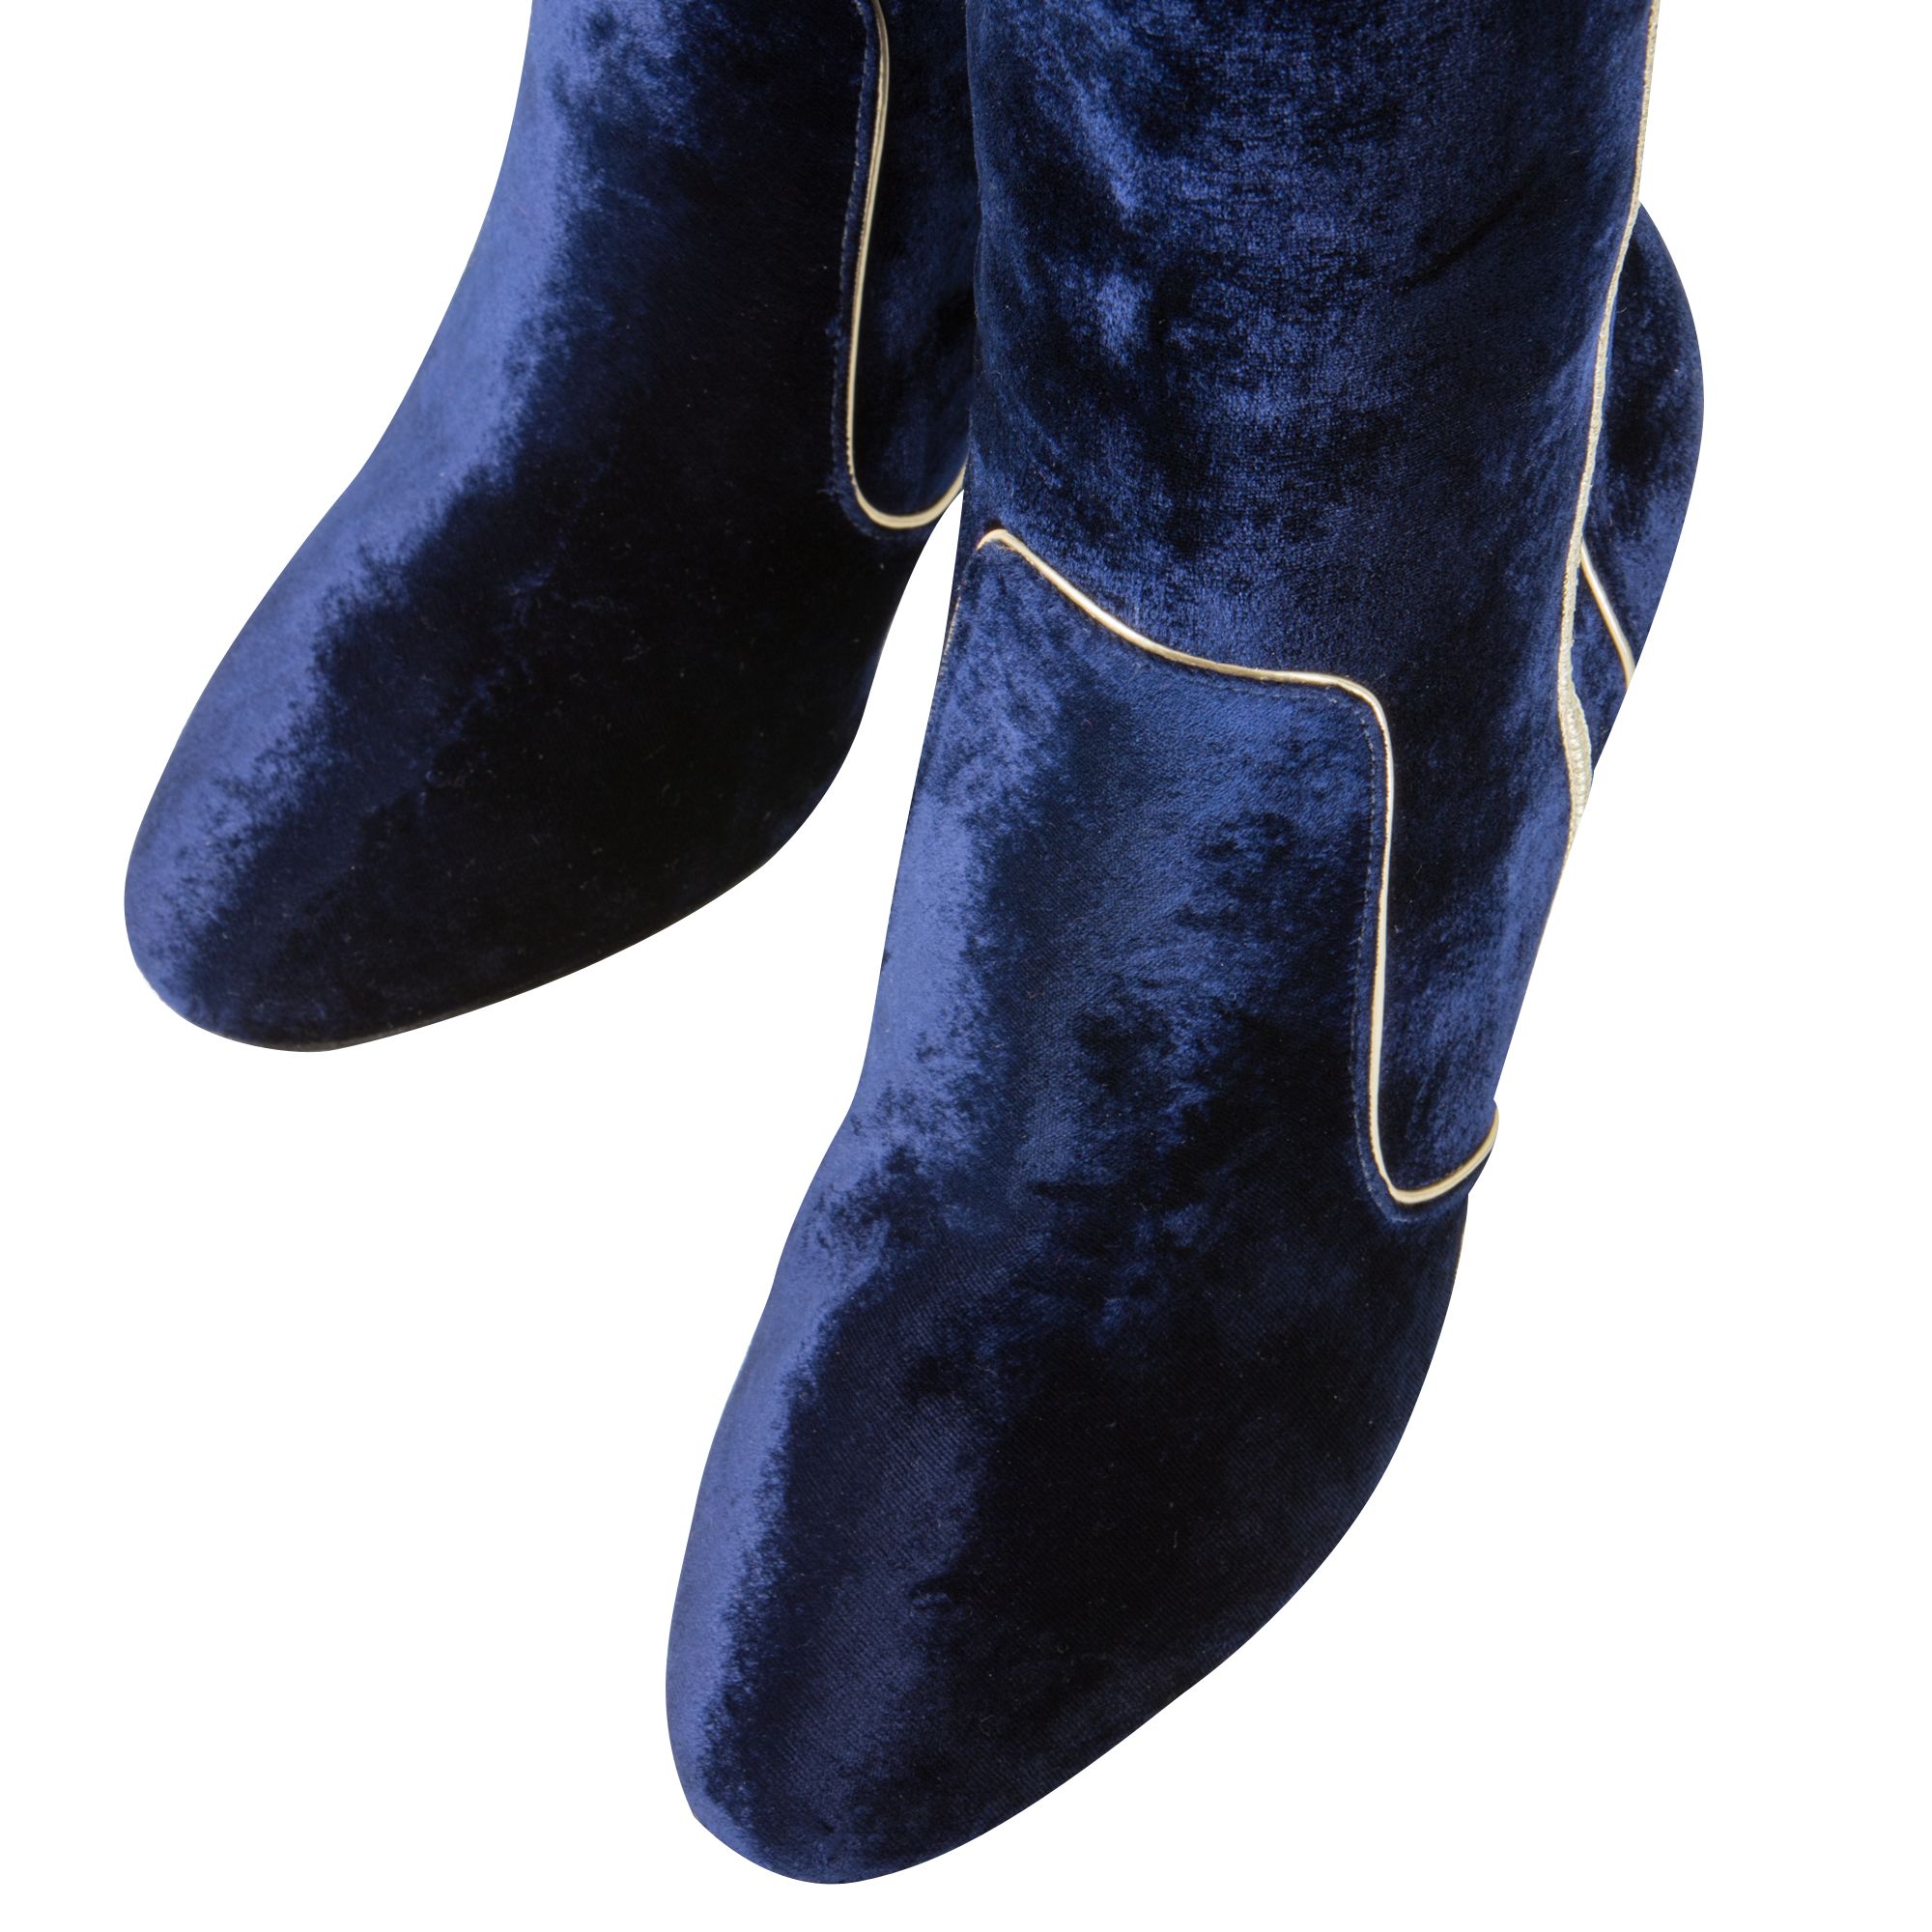 boden blue boots